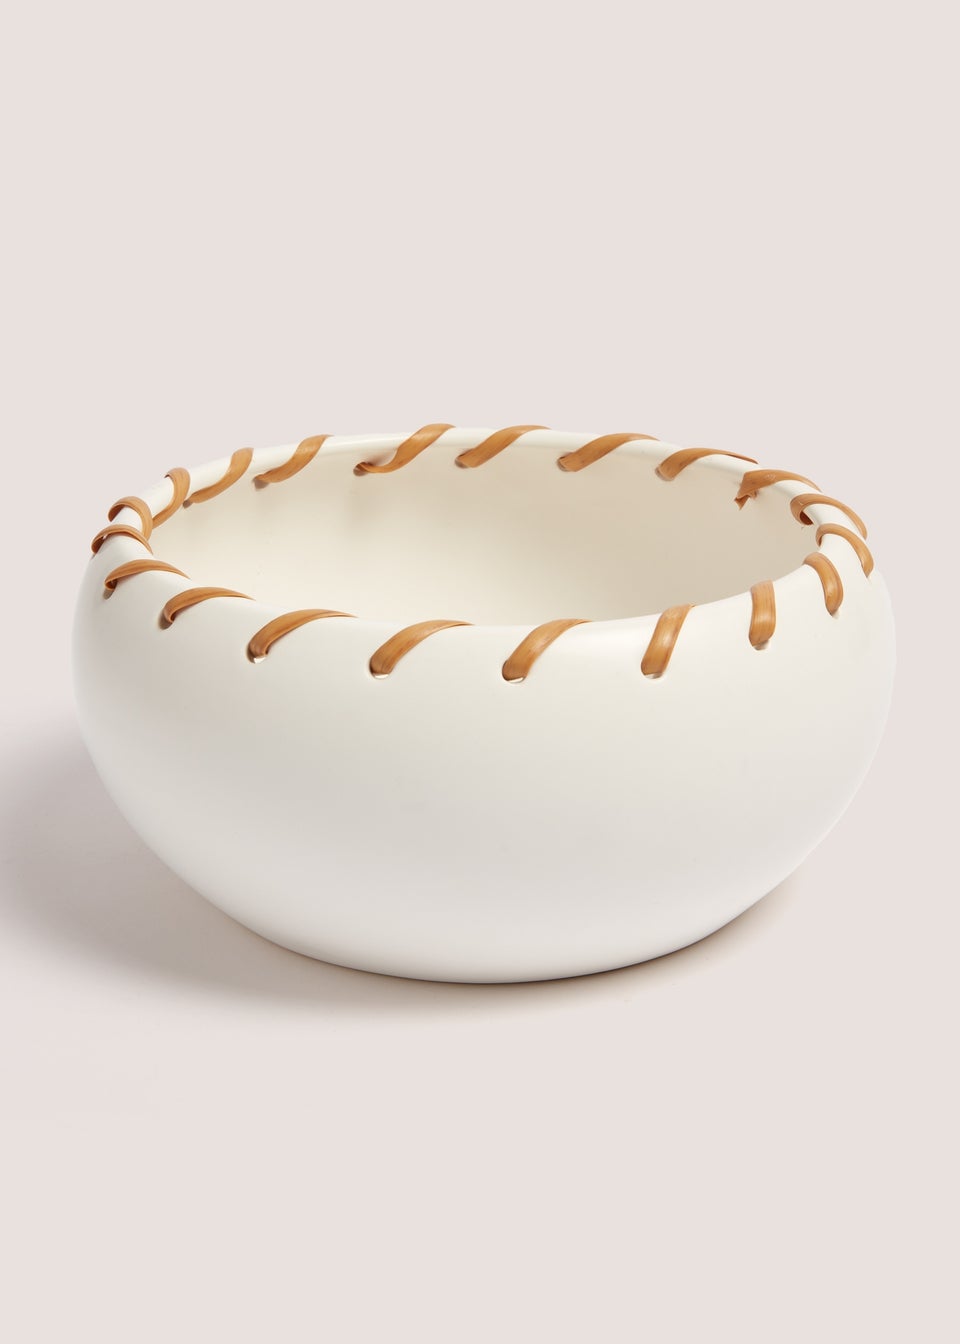 Cream Woven Ceramic Bowl (32cm x 47cm x 39cm)